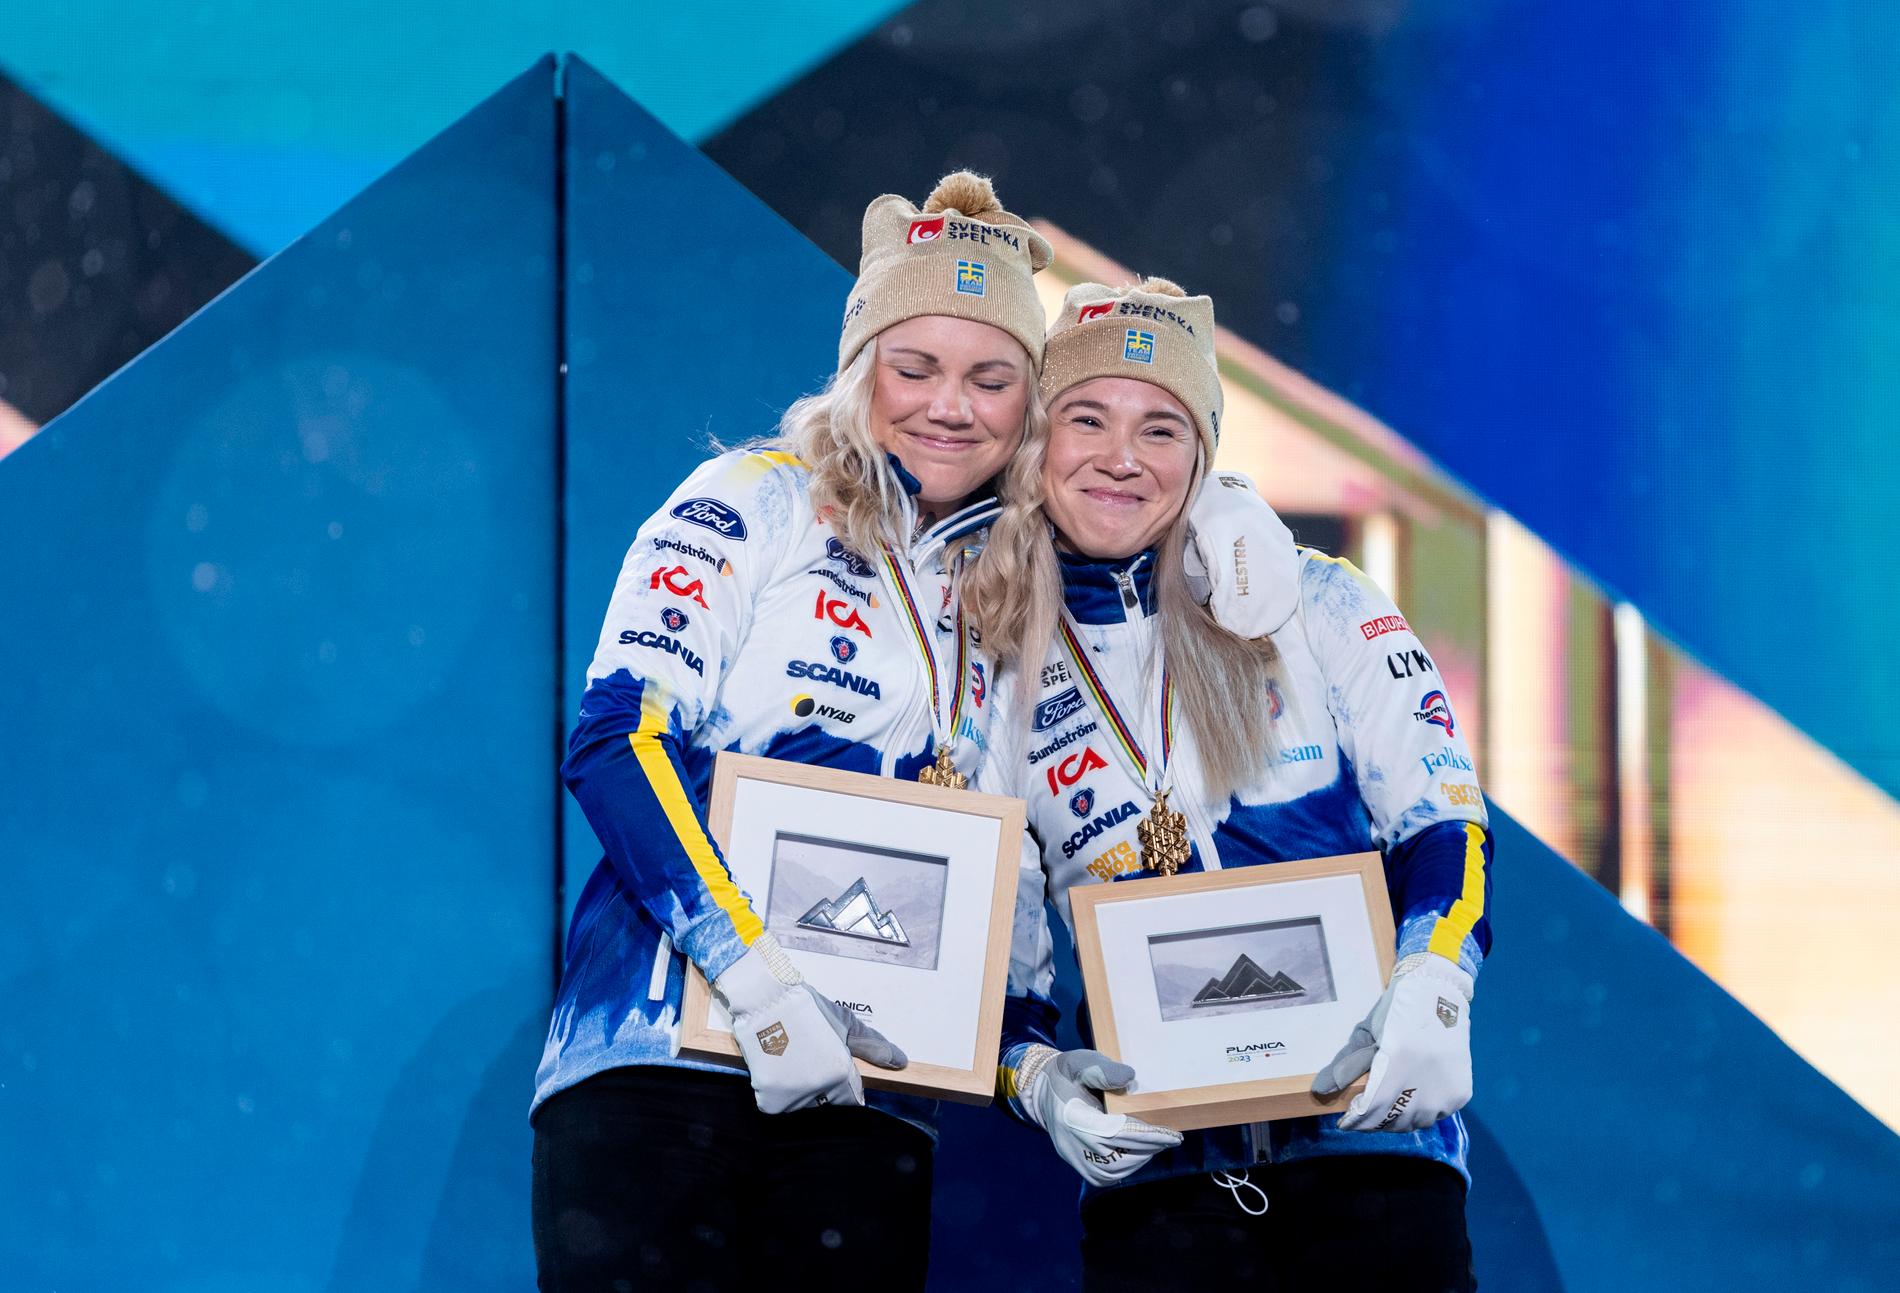 Emma Ribom och Jonna Sundling upprepade VM-succén med SM-guld i sprintstafetten i Kalix. Arkivbild.